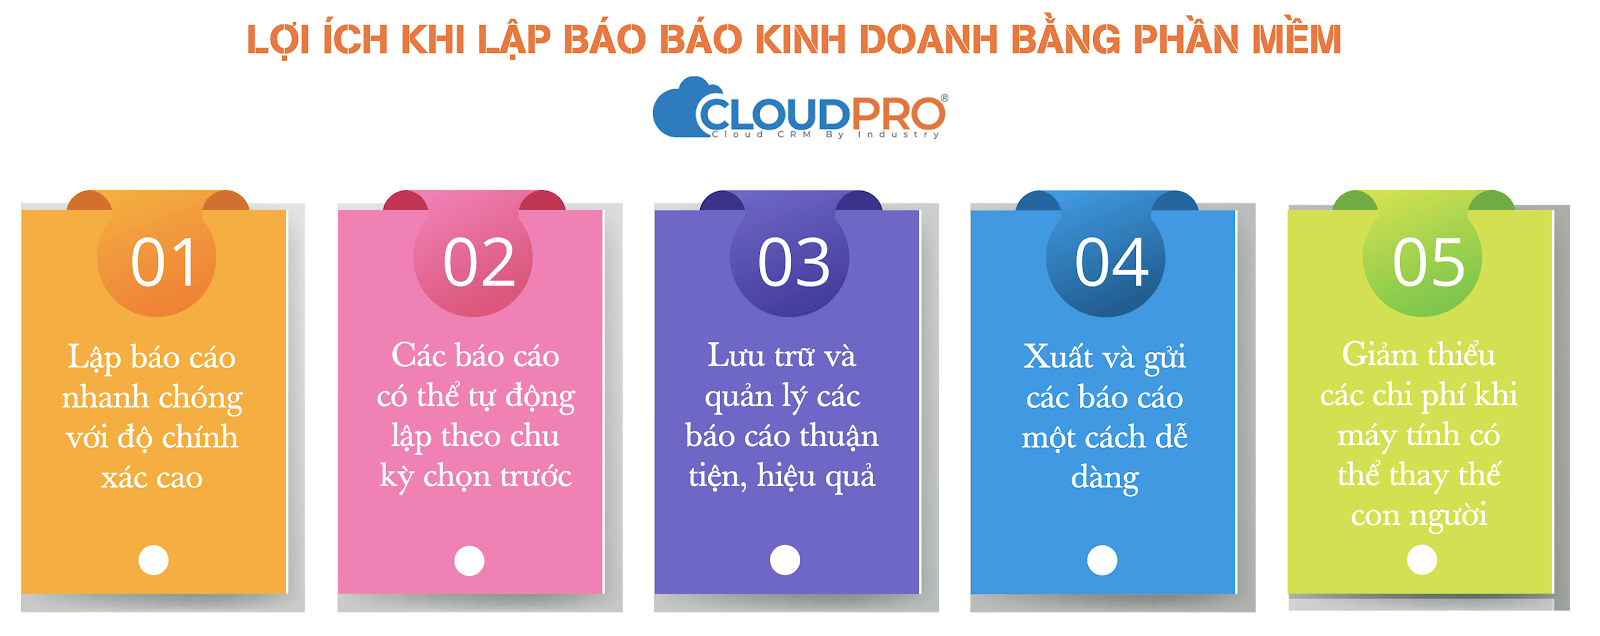 Lợi ích khi lập báo cáo bằng CloudPro CRM